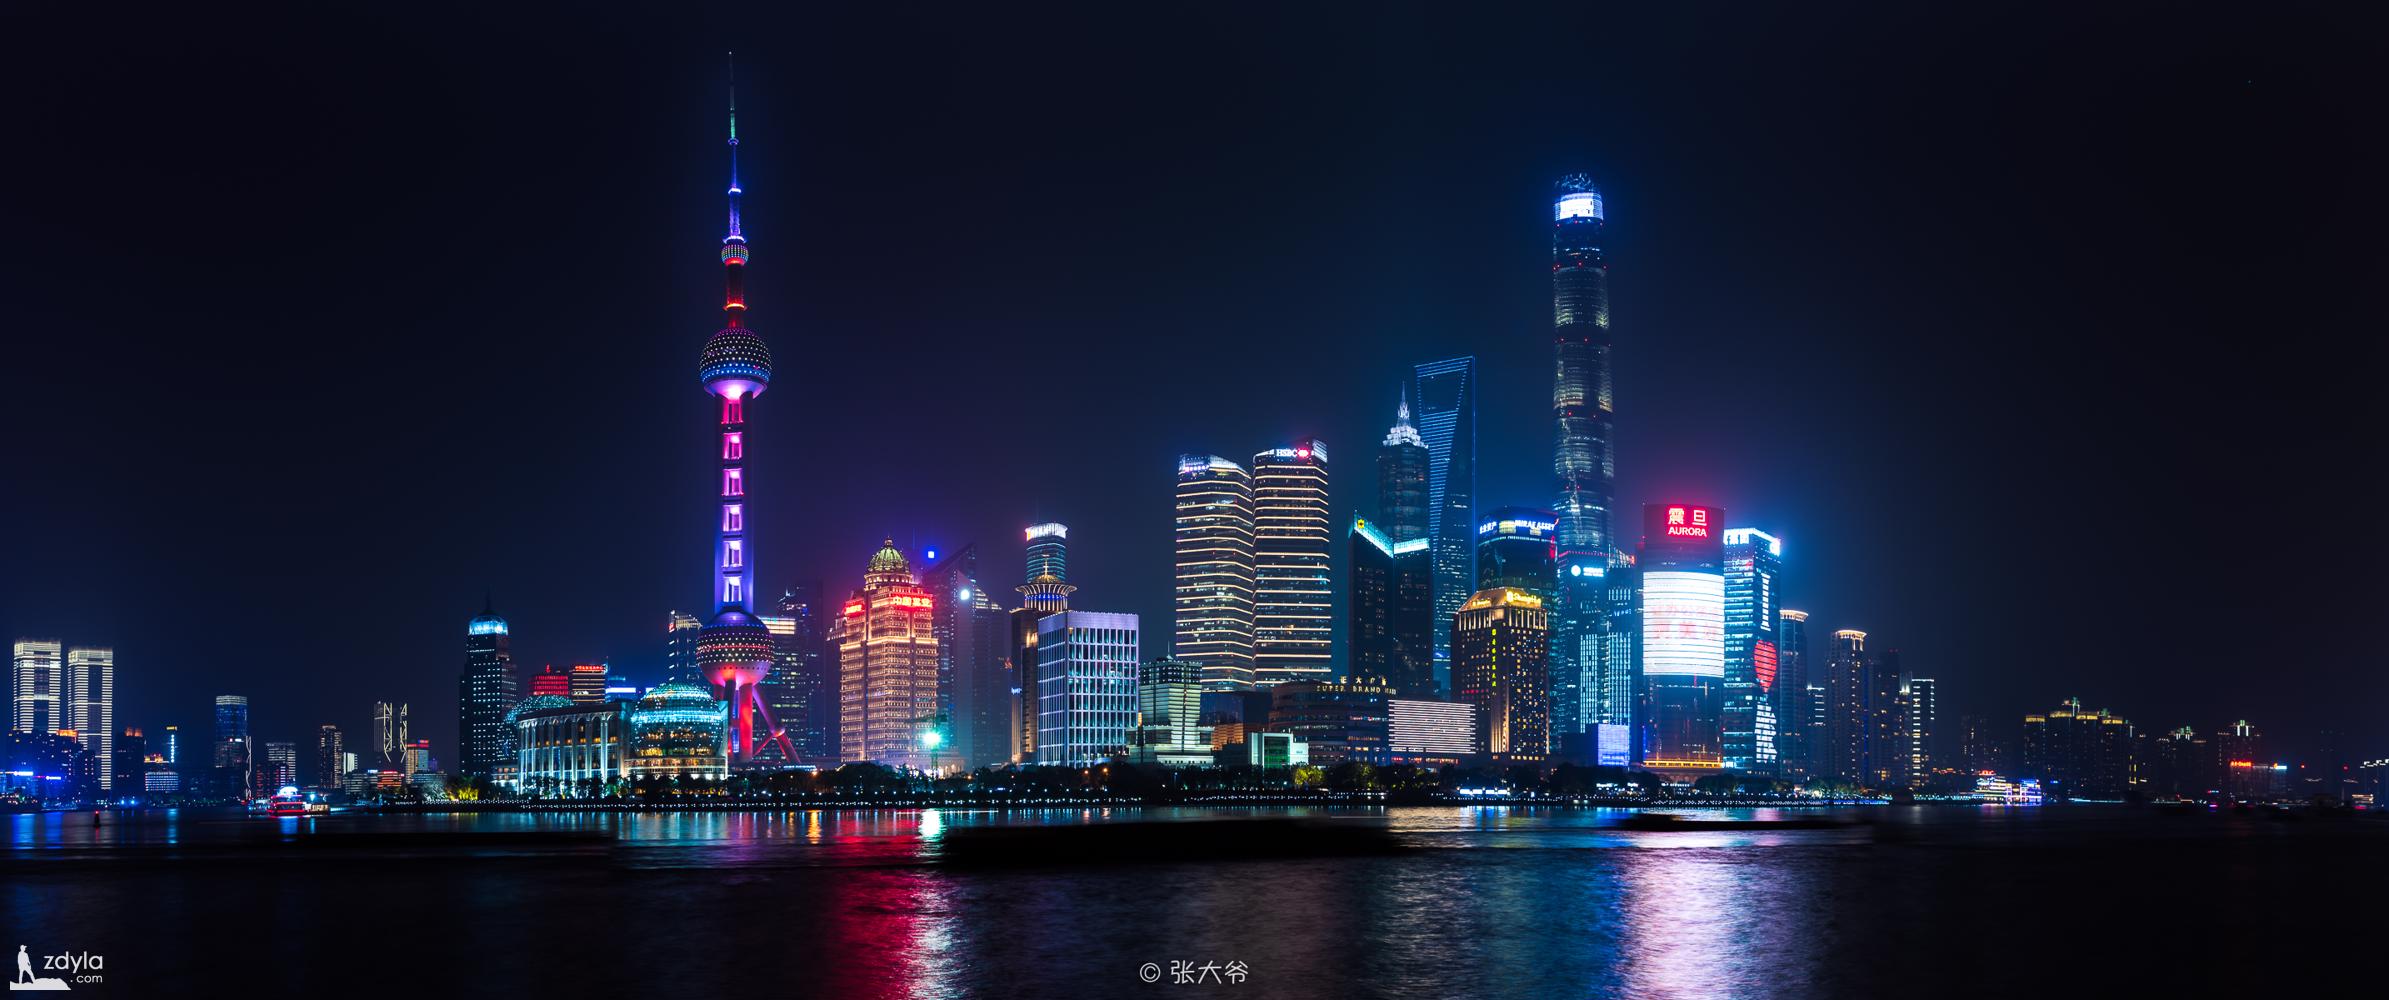 The city skyline of Shanghai